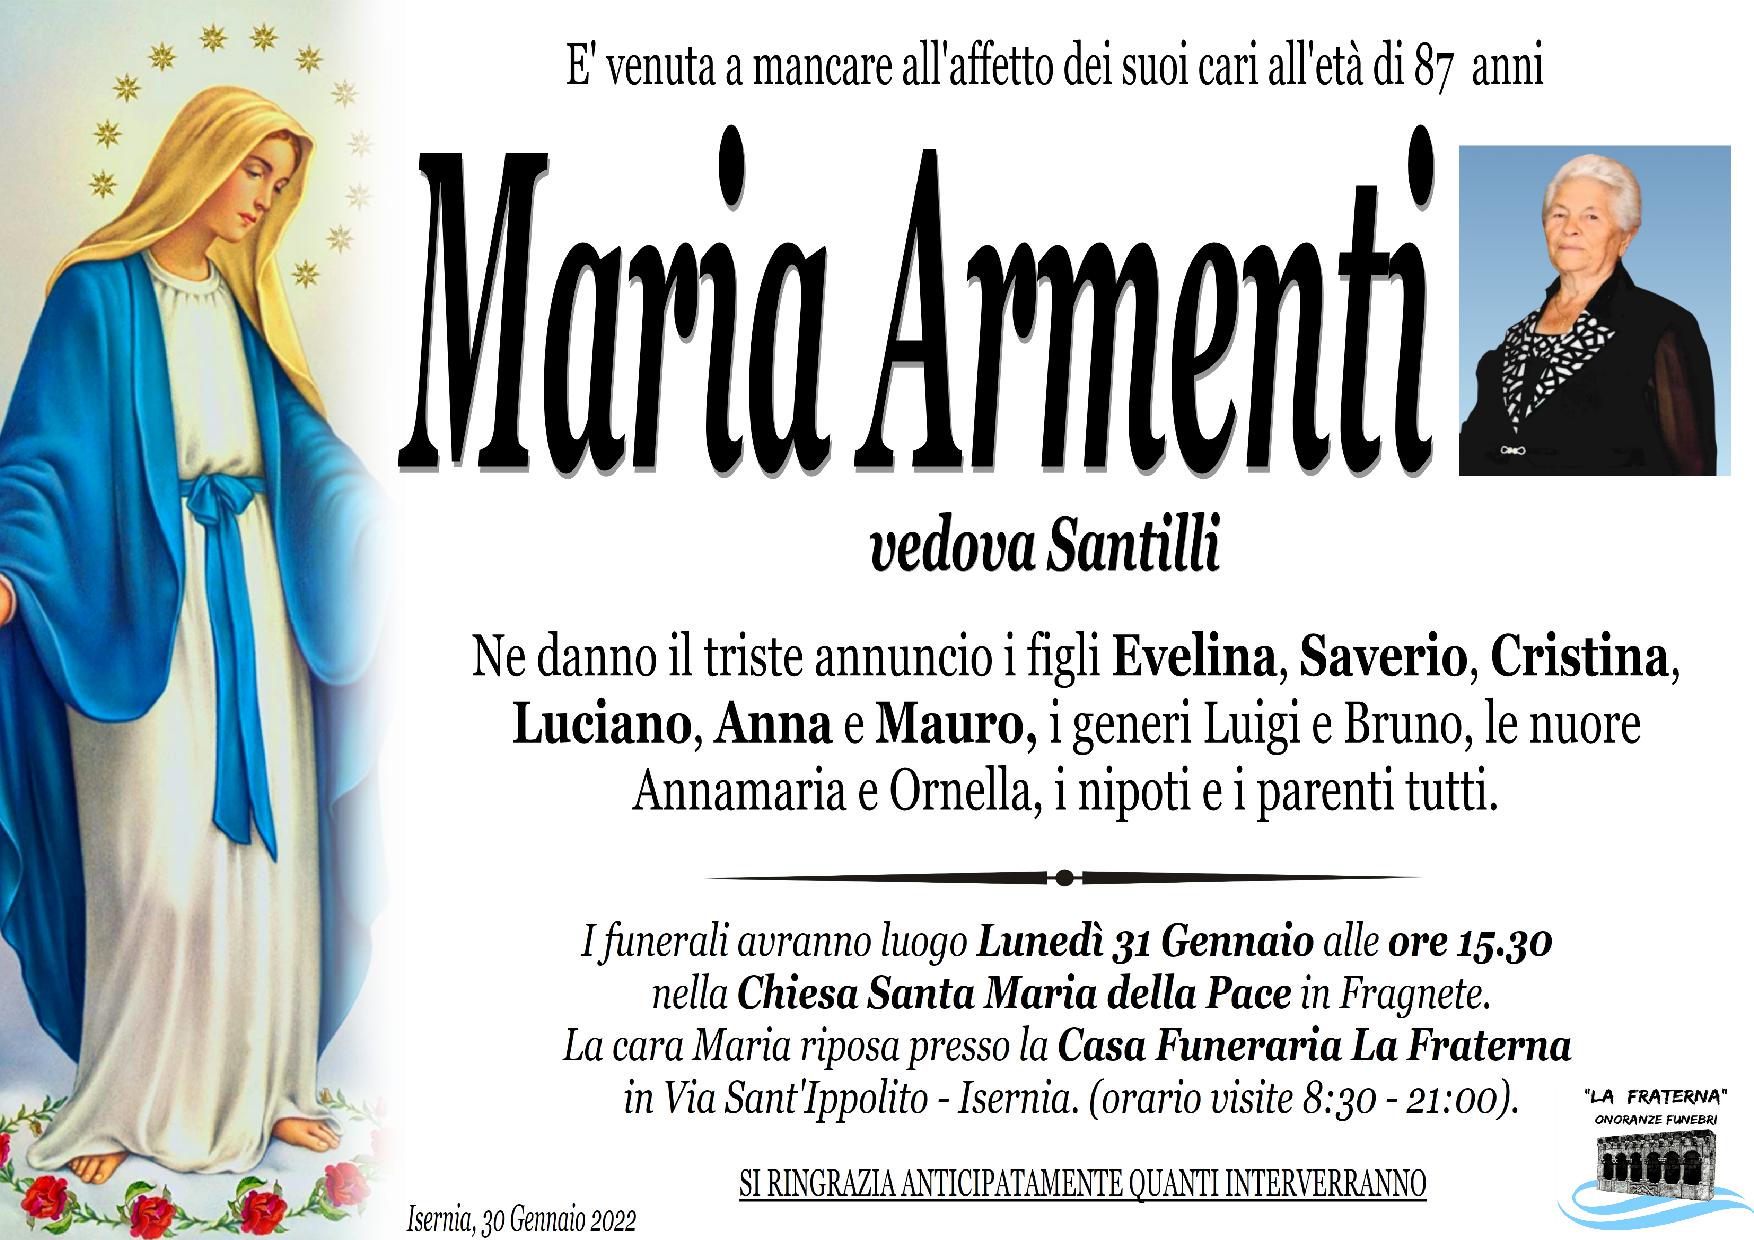 necrologio Maria Armenti